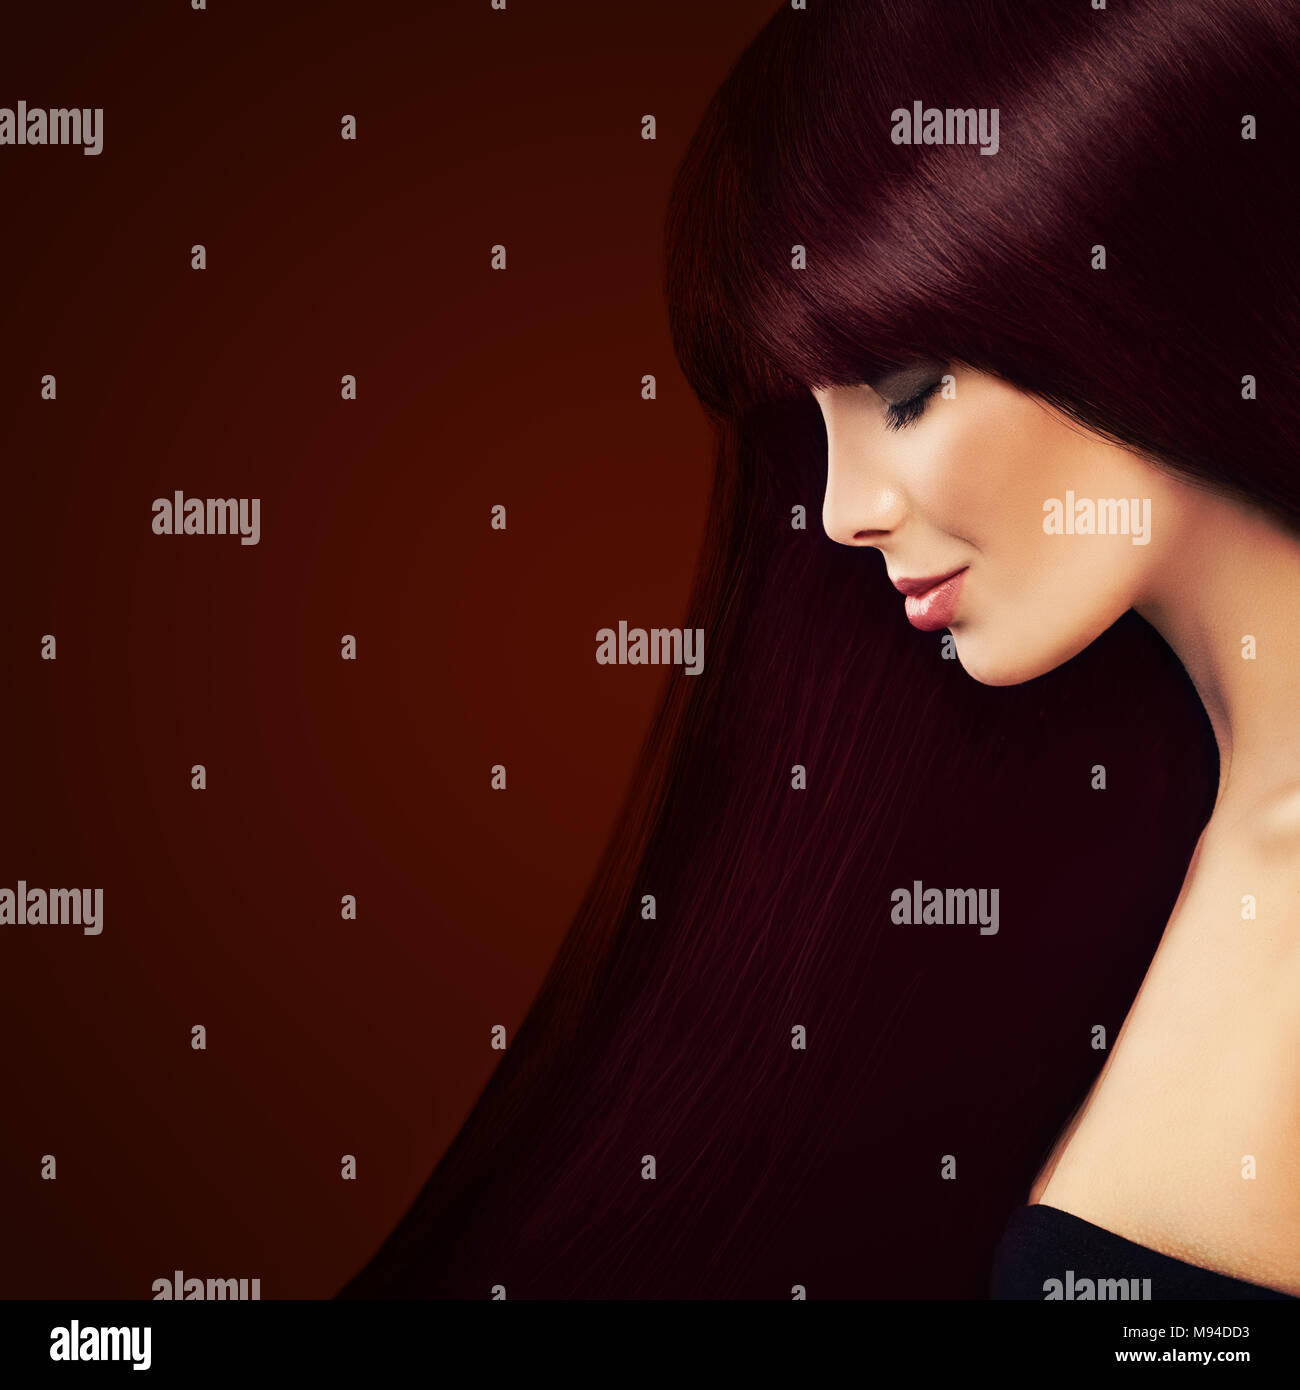 Gesundes Haar und Haare färben Konzept. Schöne Frau mit langen roten Haaren auf Hintergrund Stockfoto